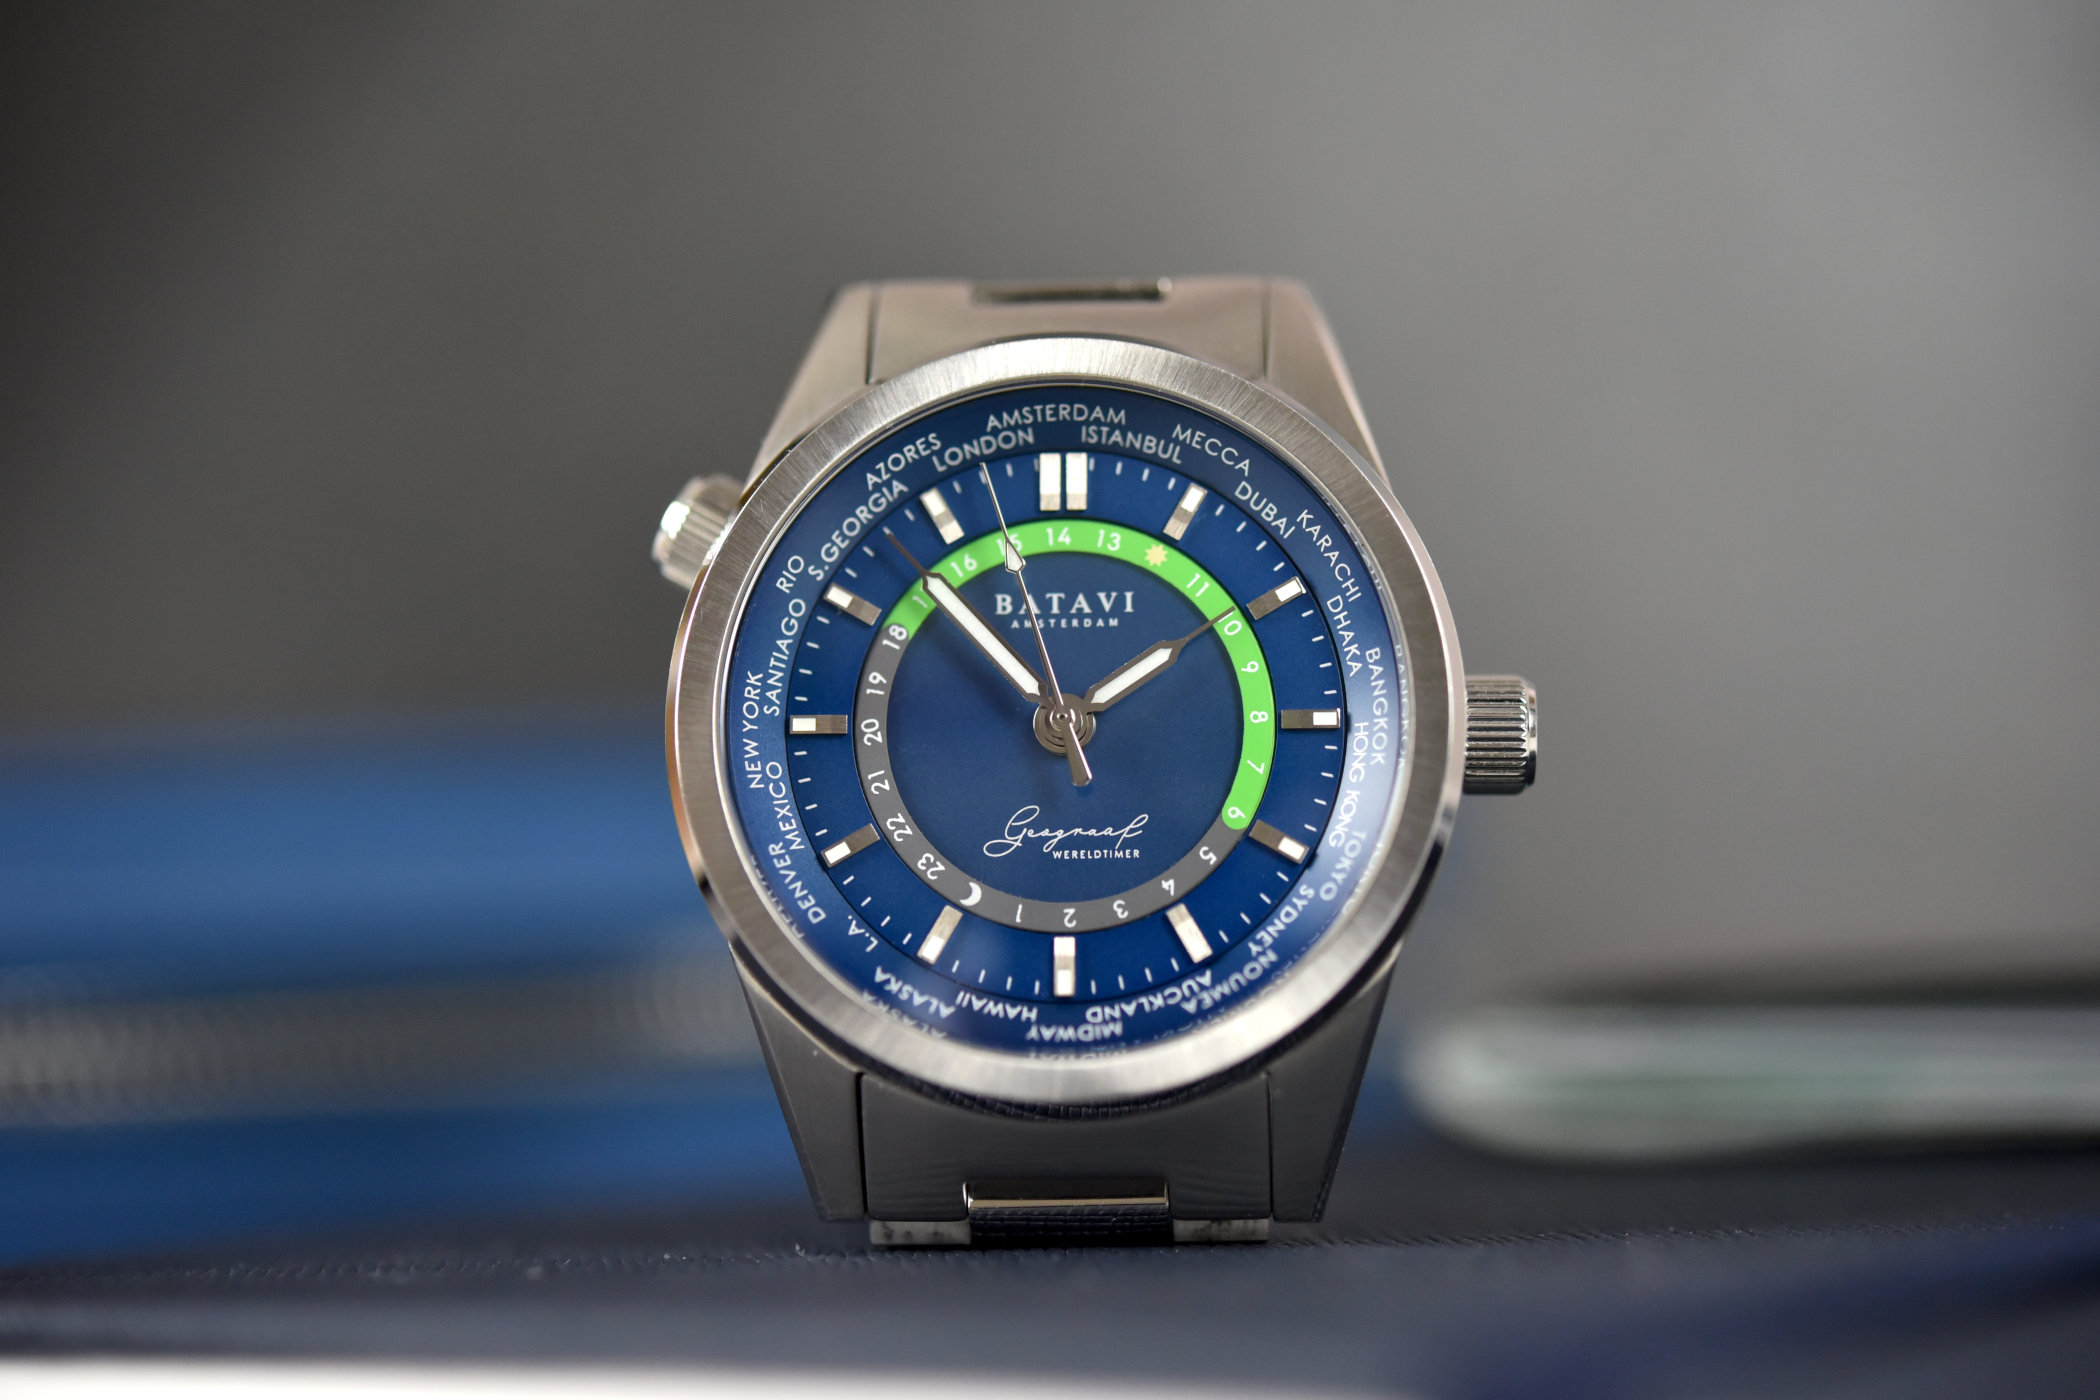 Часы с привлекательным видом и доступной ценой Batavi Geograaf GMT